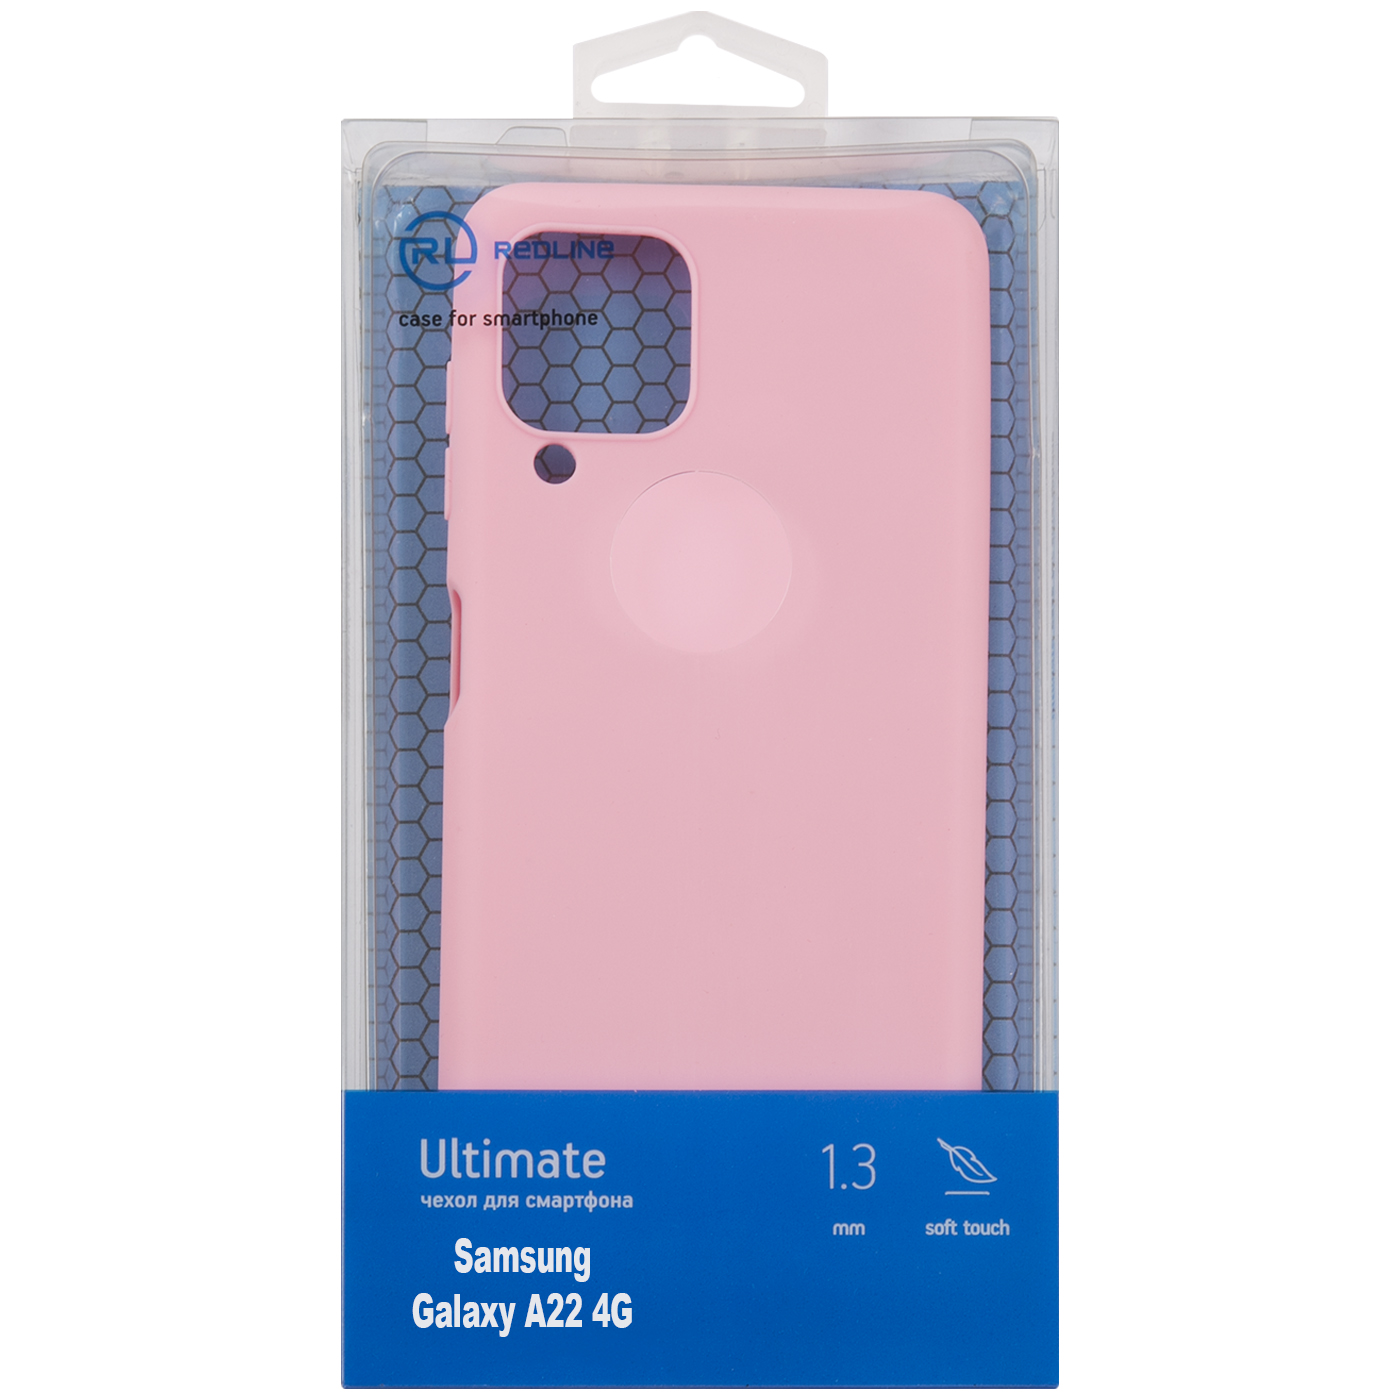 Чехол защитный Red Line Ultimate для Samsung Galaxy A22 4G, розовый УТ000025033 комплект 4 штук чехол защитный red line ultimate для samsung galaxy a22 4g черный